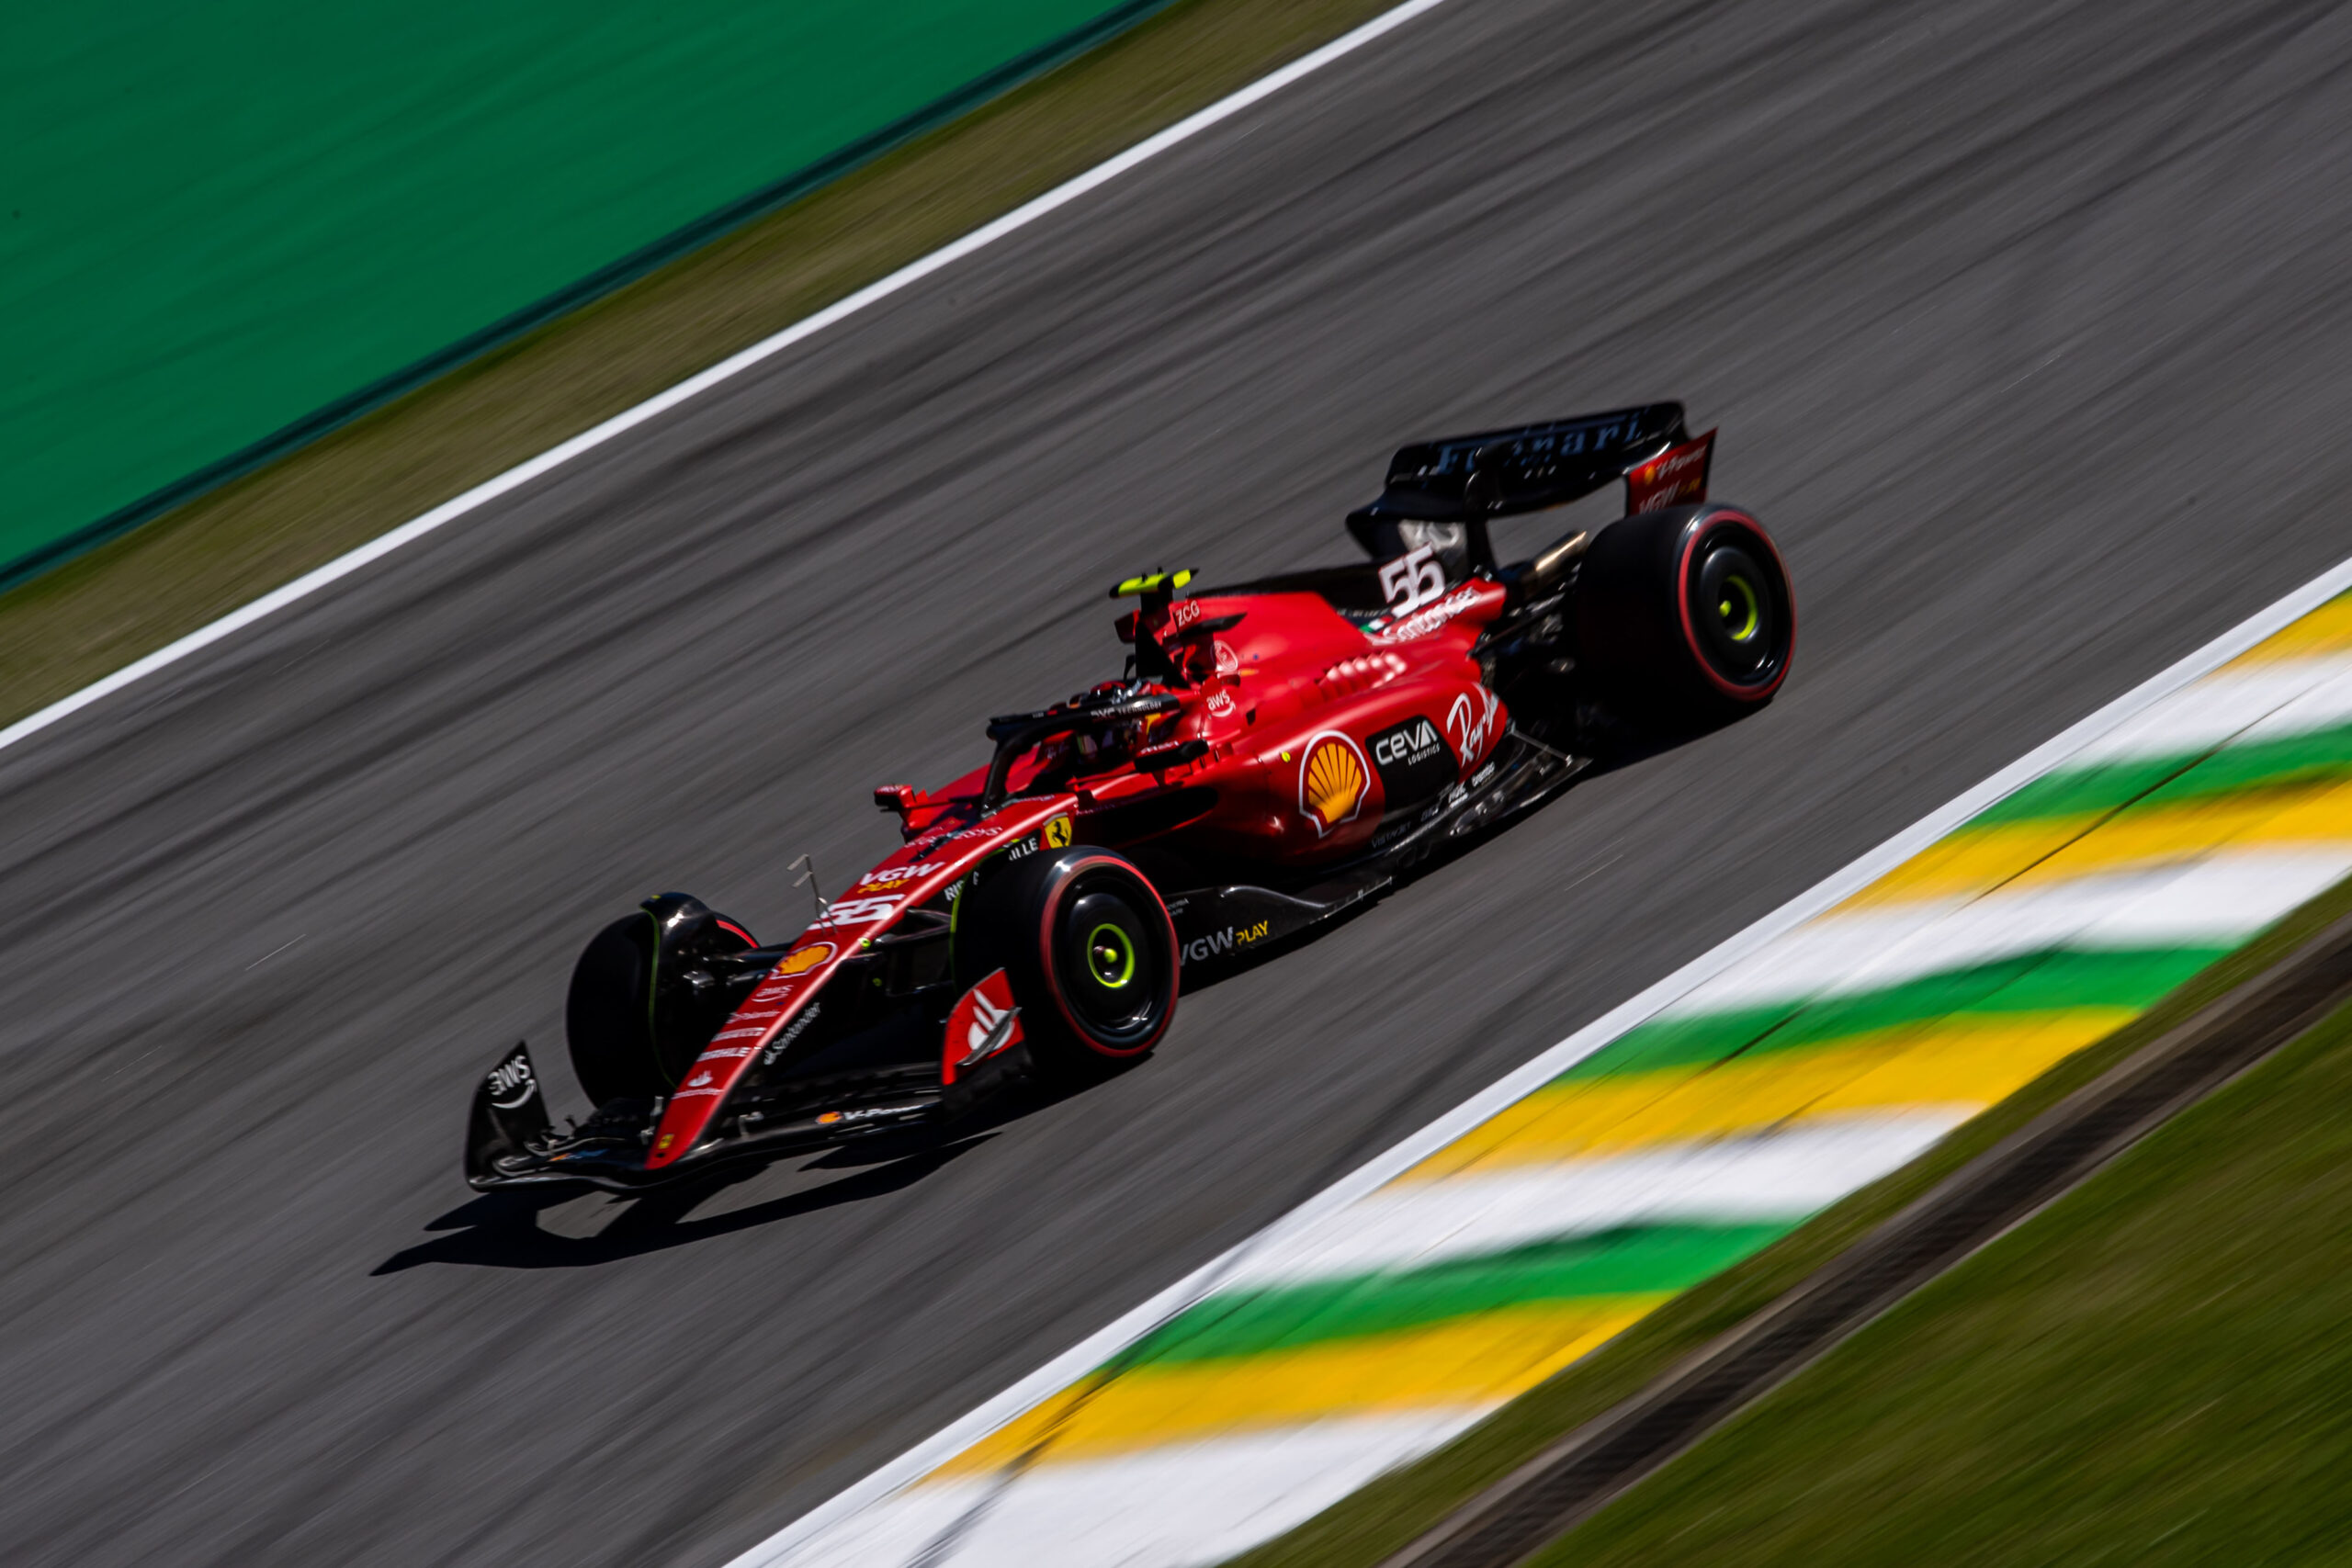 Gran Premio di San Paolo – Race recap: Carlos sesto, Charles non riesce a prendere il via